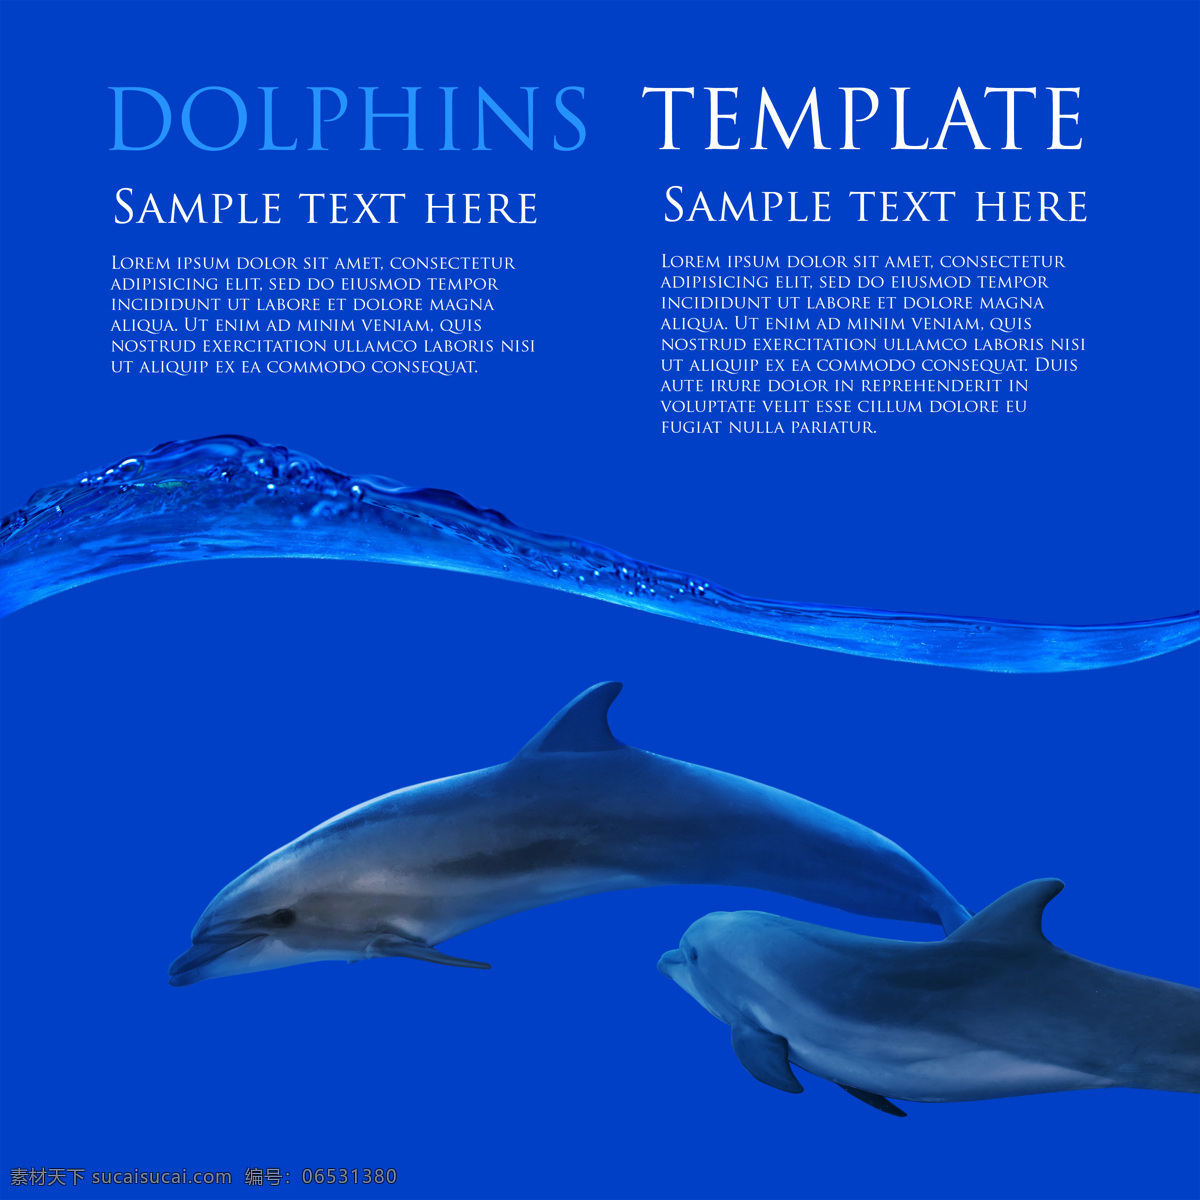 海鲜 海报 展板 海报素材 展板素材 鱼 鱼素材 海鲜素材 海豚 海豚素材 海鲜海报 蓝色 蓝色背景 经典蓝色 大海图片 风景图片